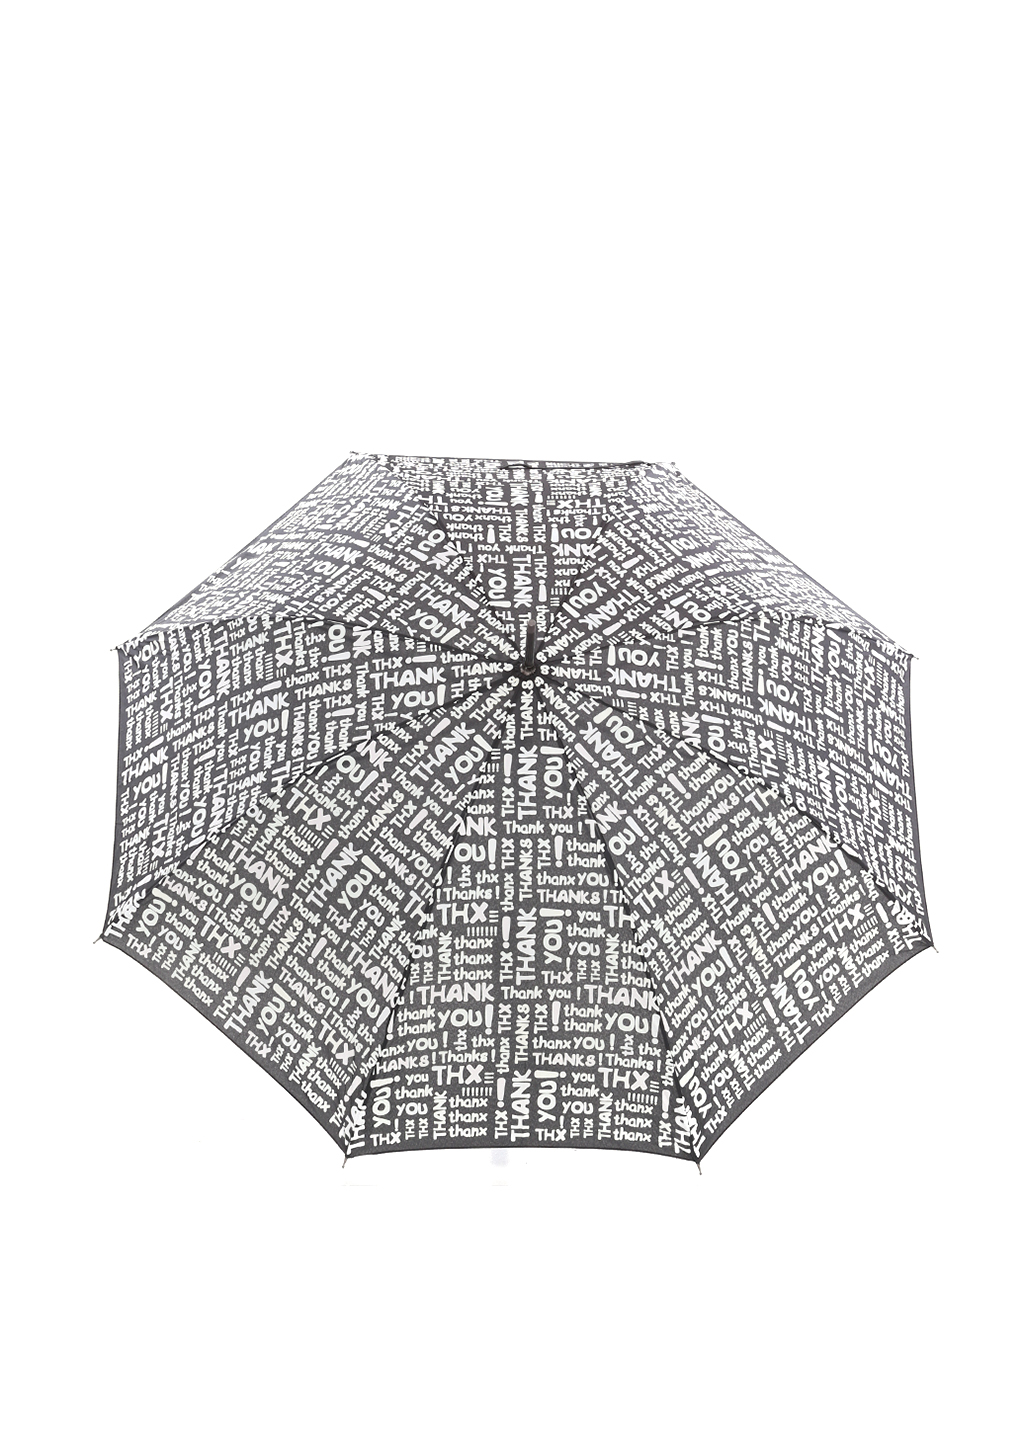 Жіночий парасольку-тростину Baldinini Чорний у літерах (610)